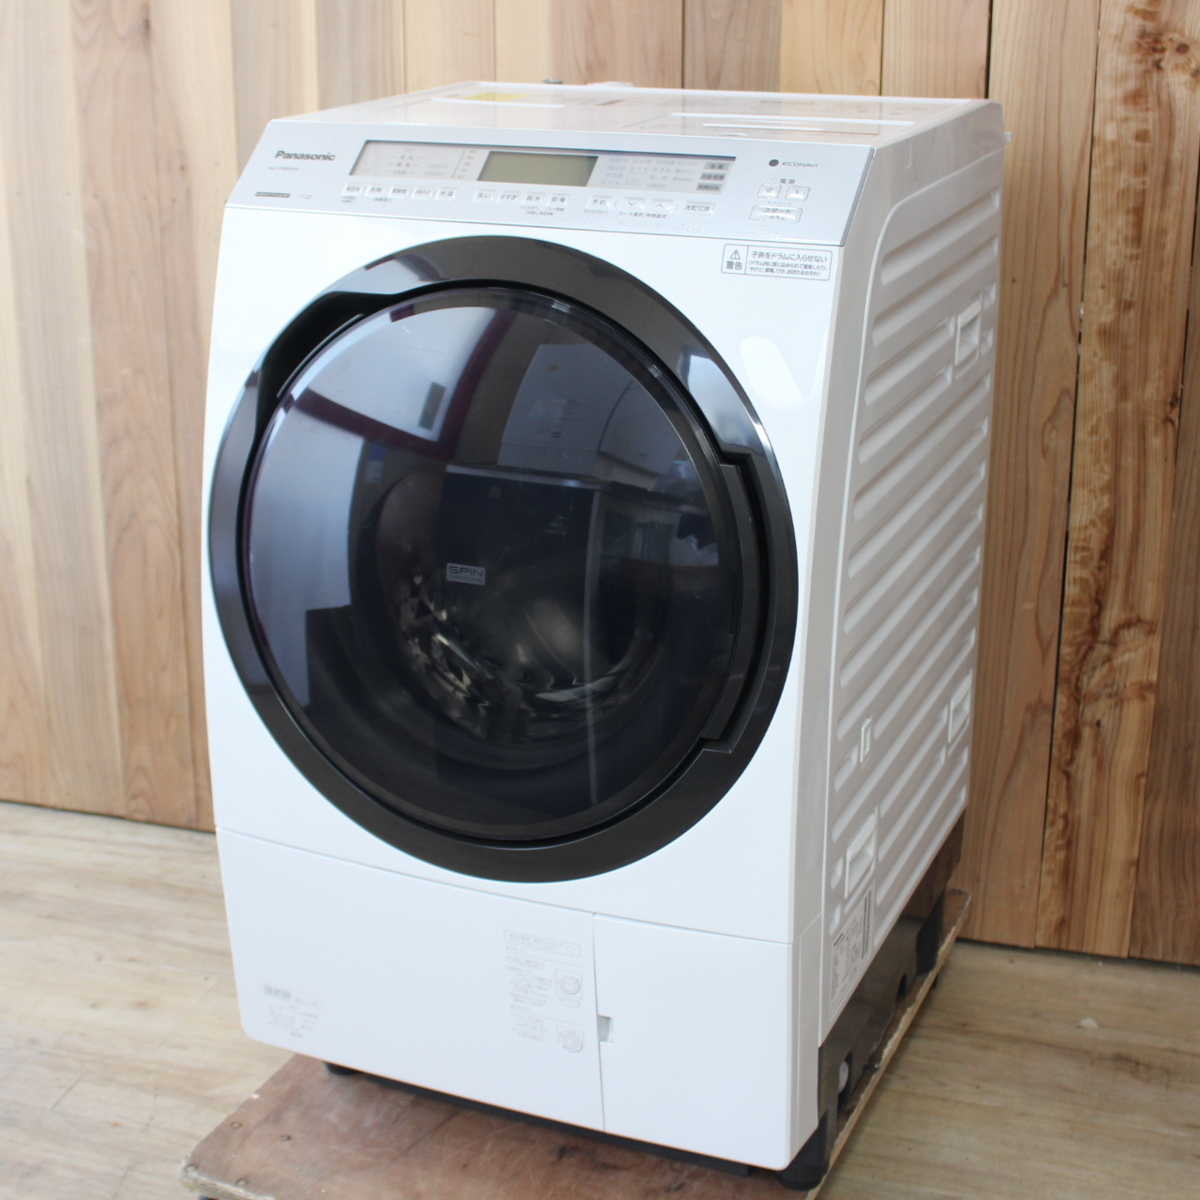 パナソニック ななめドラム洗濯乾燥機 11kg 右開き NA-VX800AR 自動投入 2020年製 クリスタルホワイト